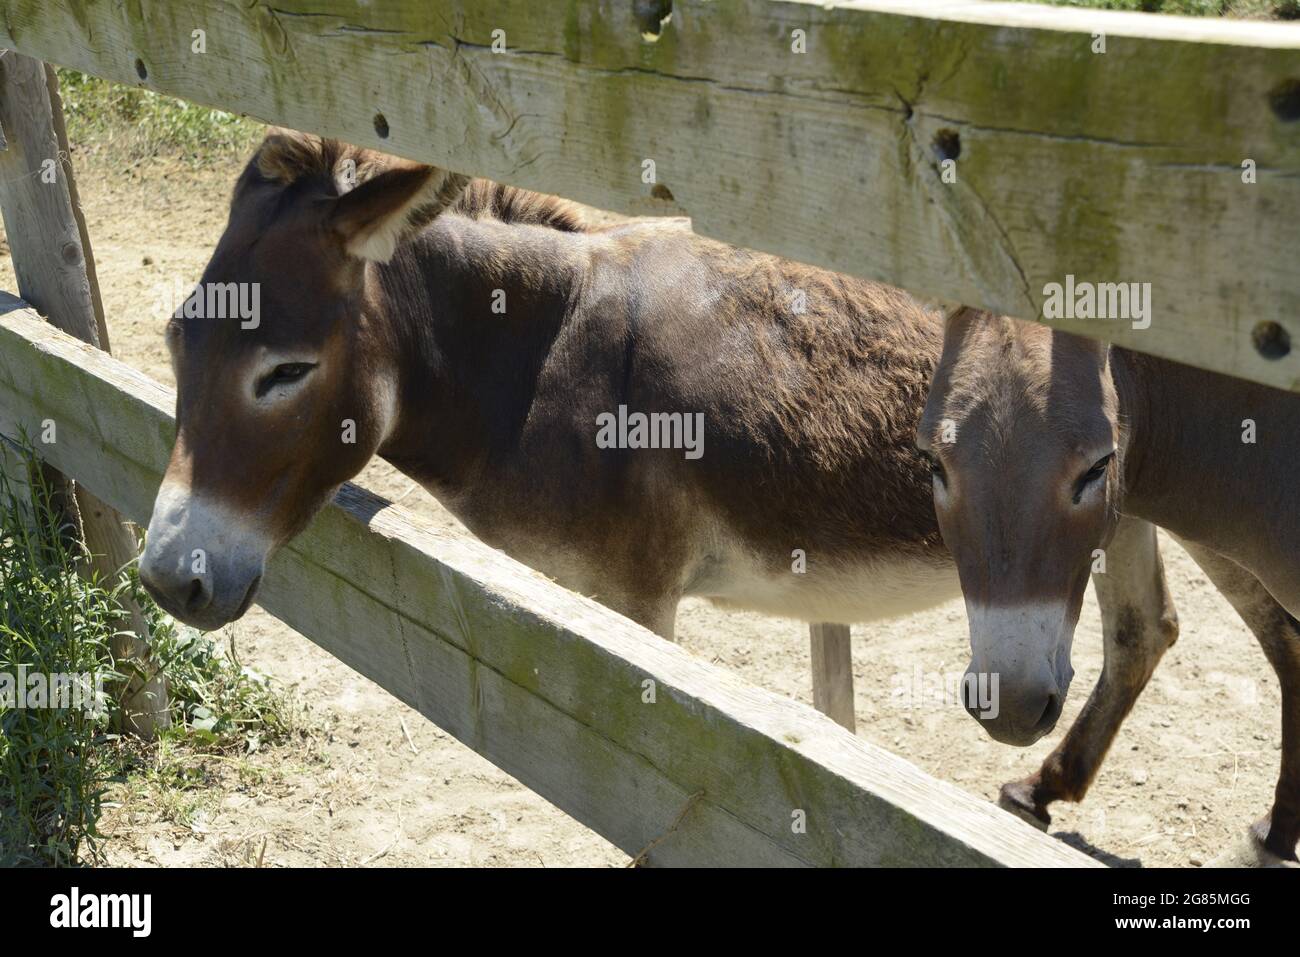 donkey, Stock Photo